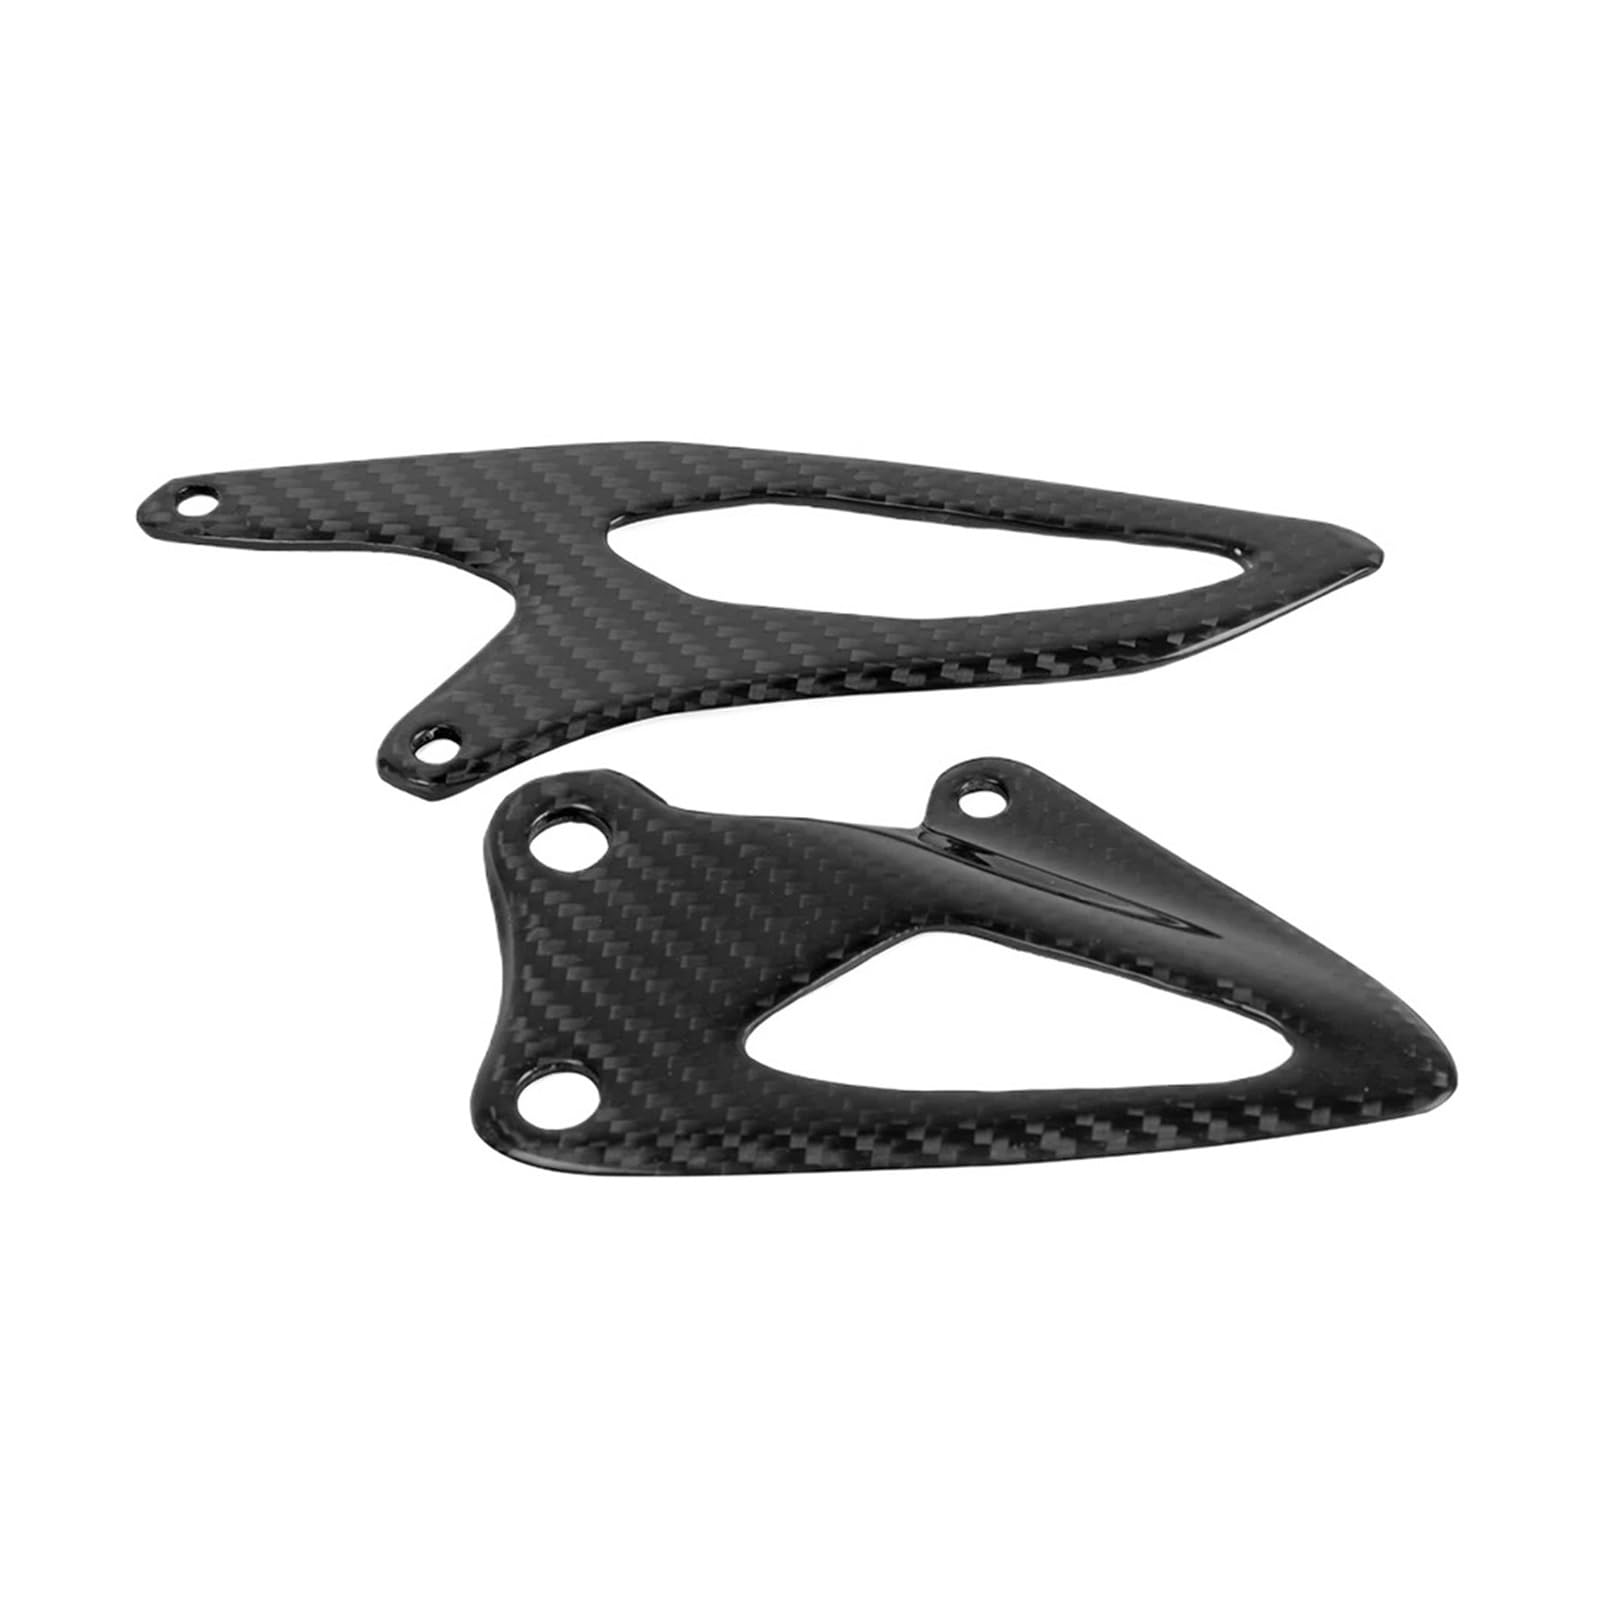 TROGPYXG Fersenscheiben für Motorrad aus Kohlefaser (Ersatz) Fersenschutz Fußplatte für Trittbrett Schutz kompatibel mit Yamaha R1 2015 2016 2017 2018 von TROGPYXG